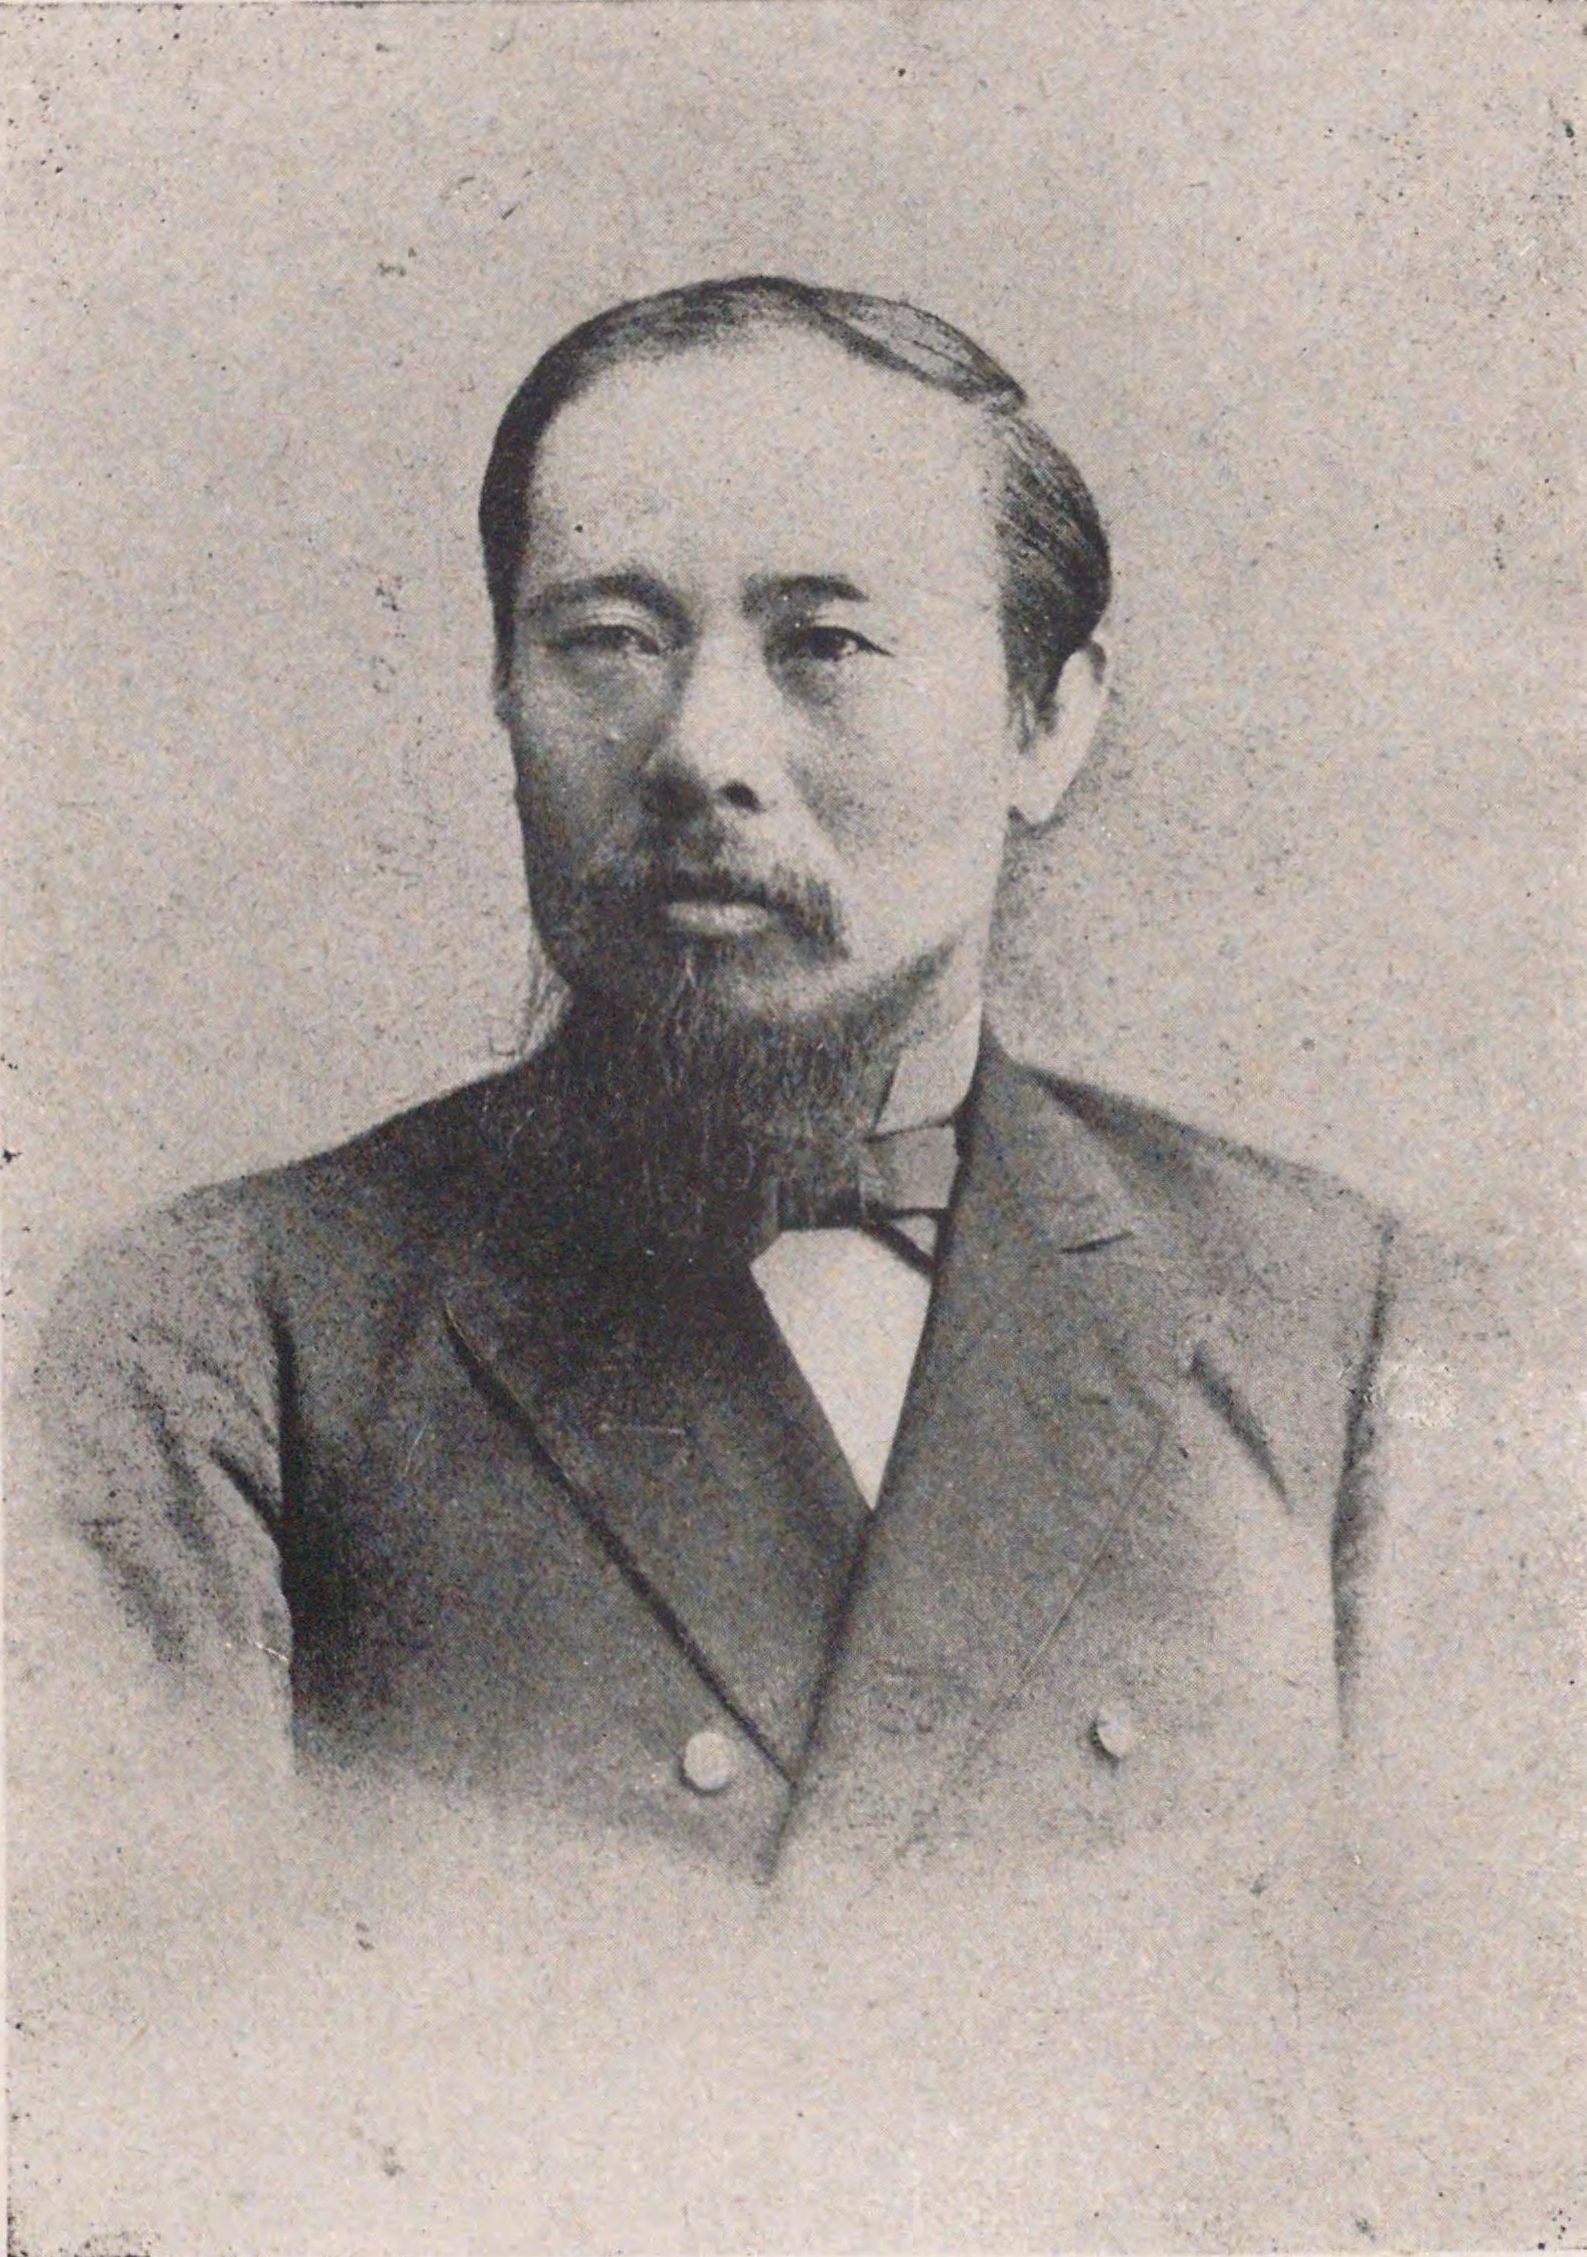 Portrait of ITO Hirobumi9